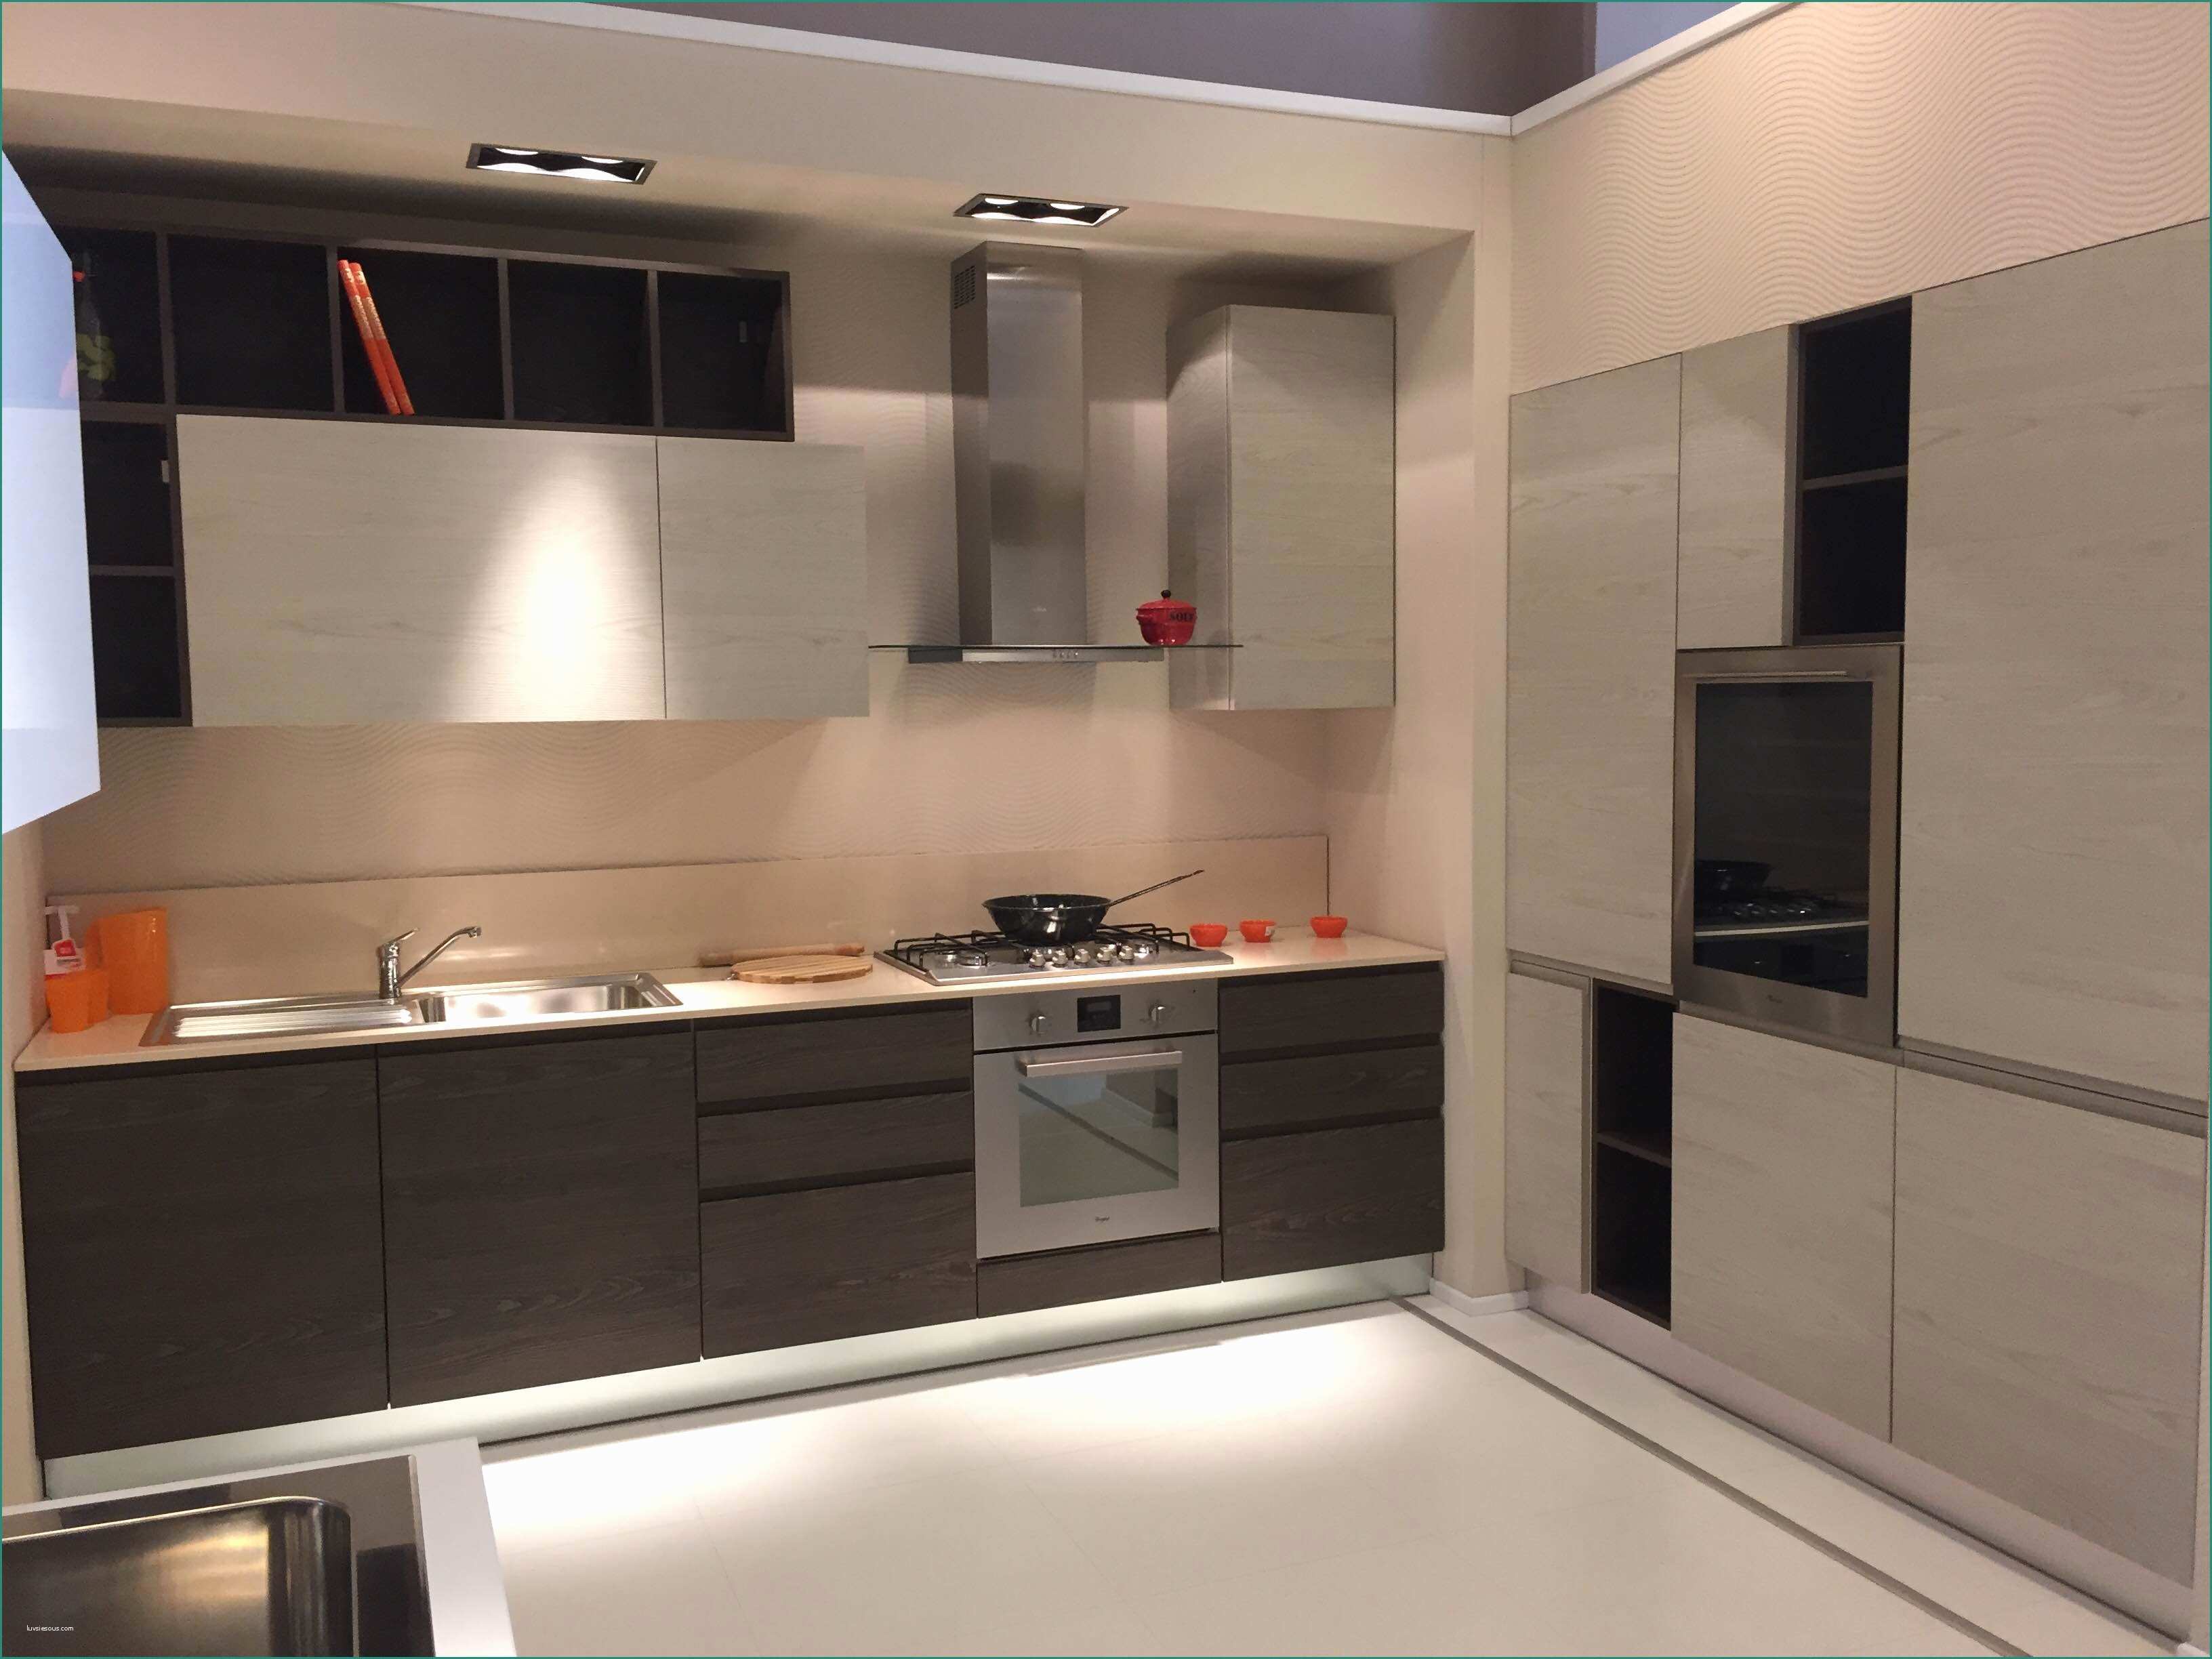 Cucine In Muratura Stile Moderno E Cucine Arrex Qualit Idee Di Design Per La Casa Rustify